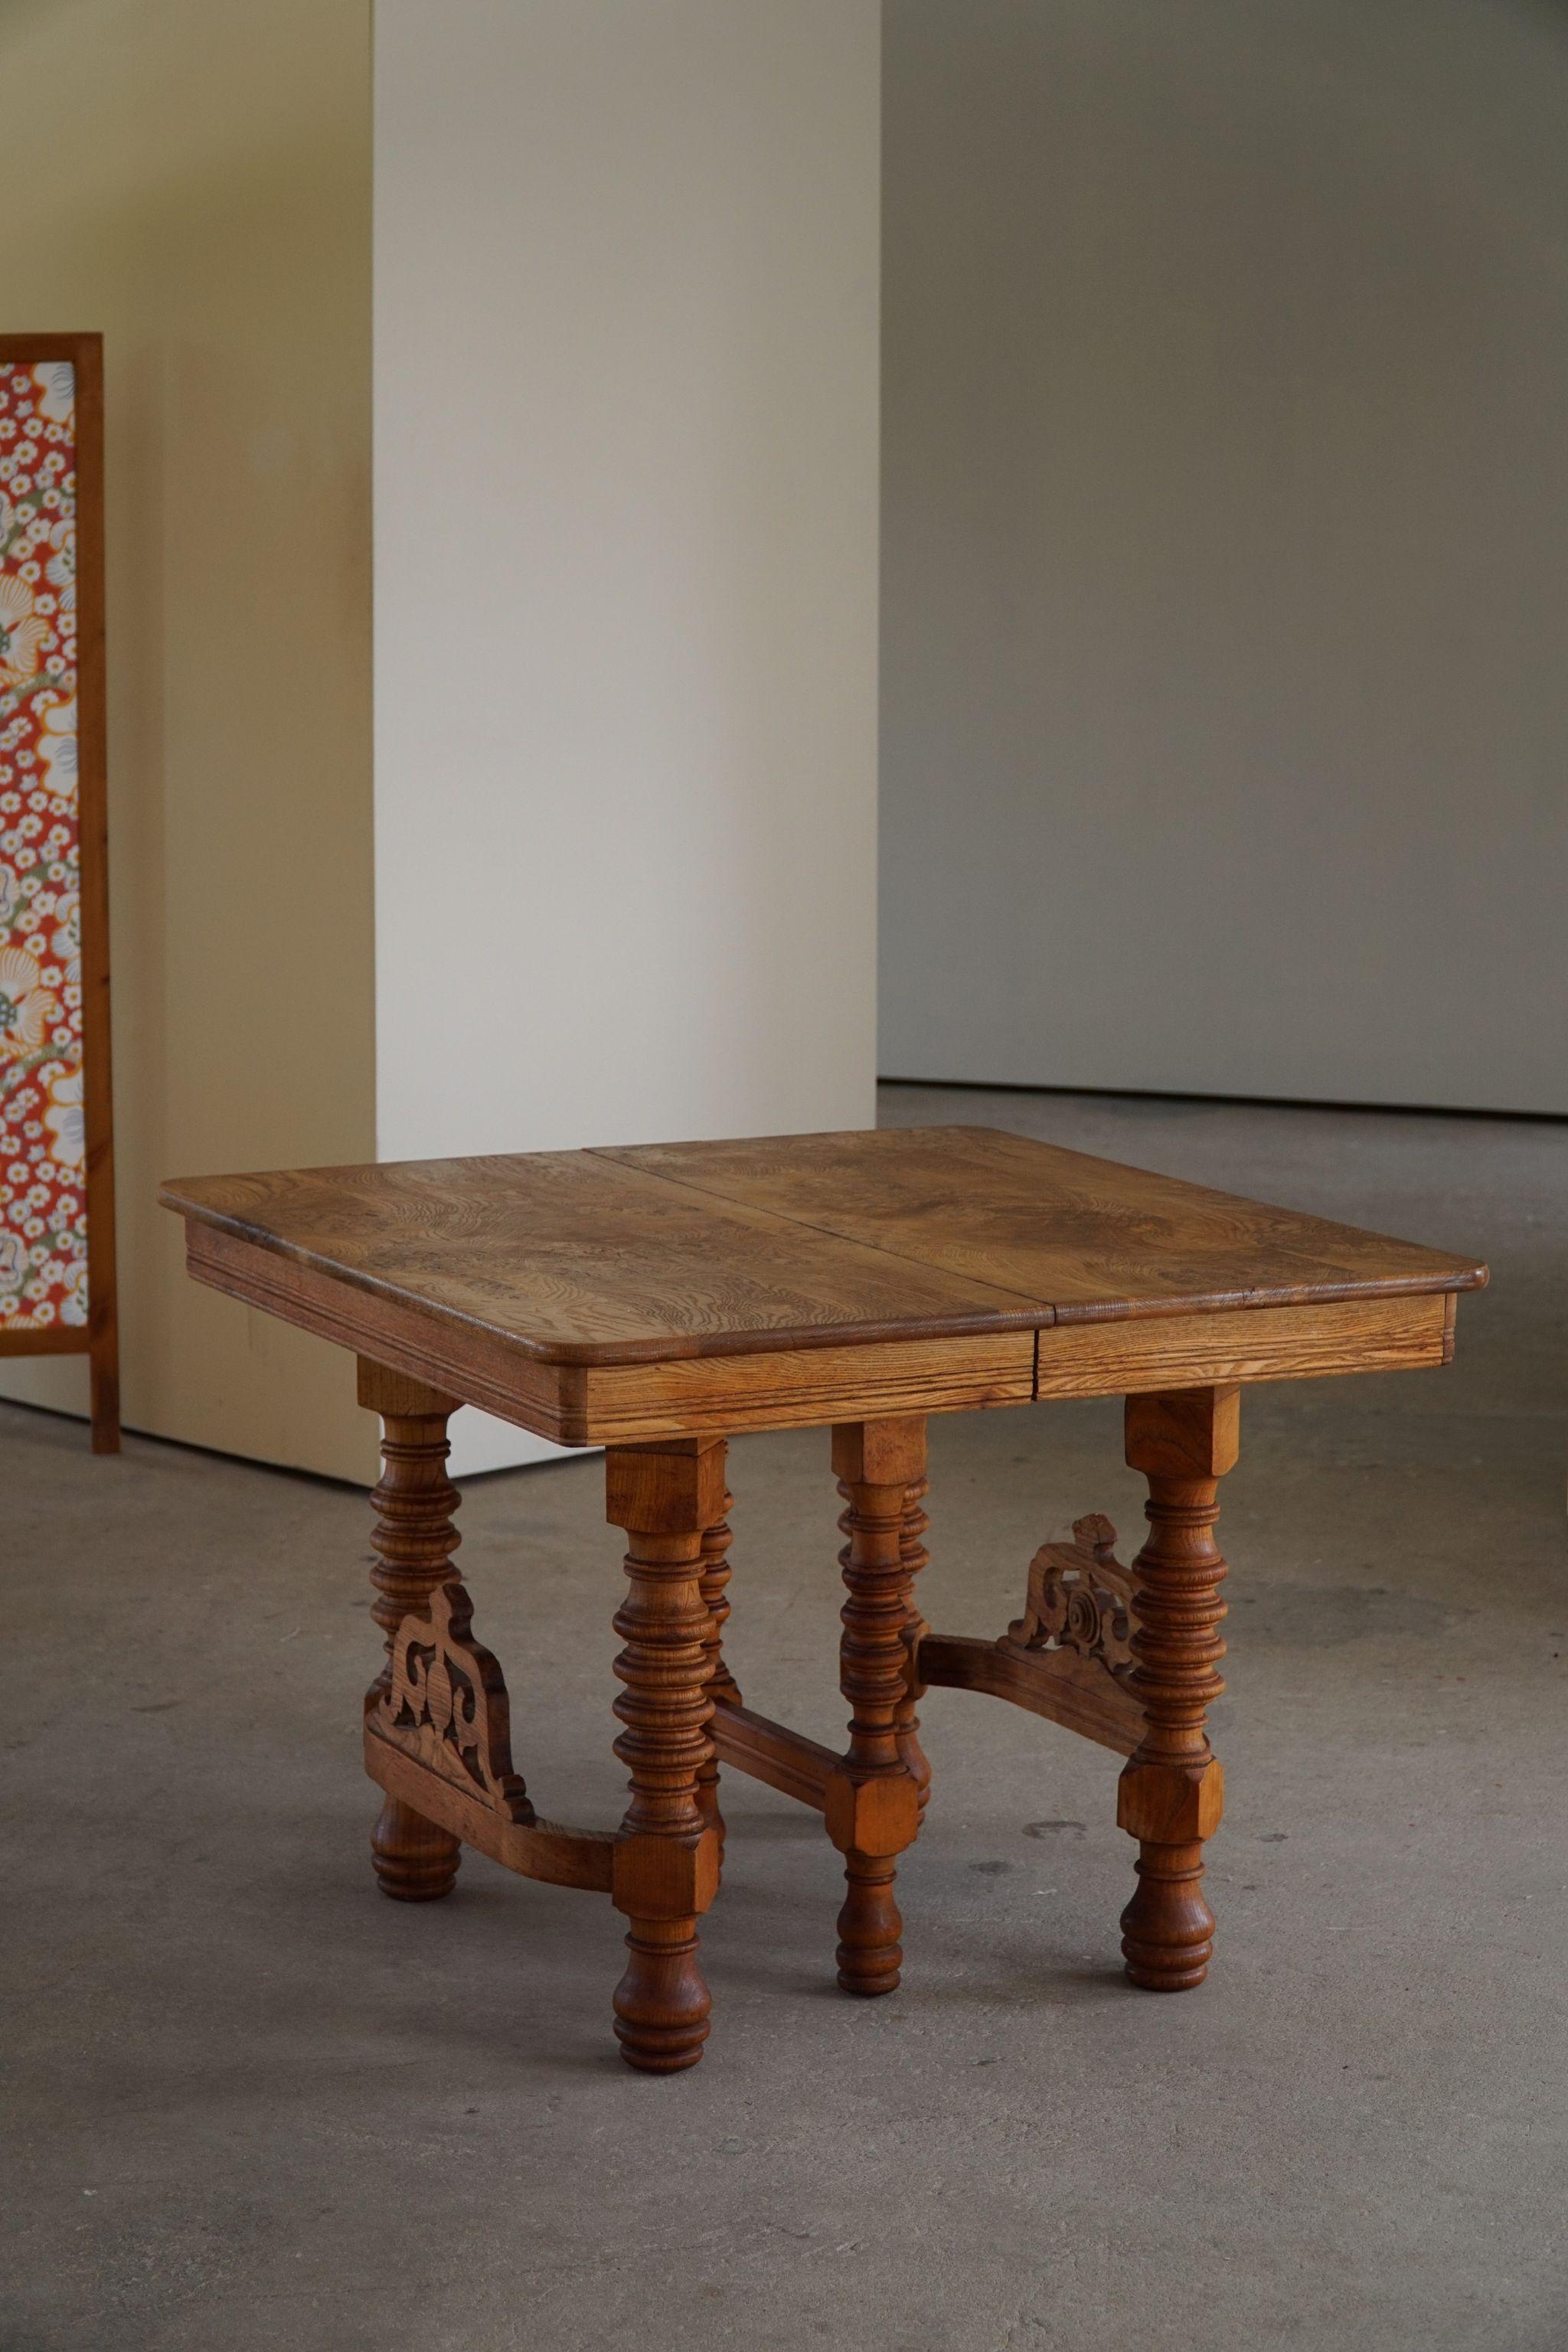 Wunderschöner barocker Esstisch / Schreibtisch aus massiver Eiche. Ende des 19. Jahrhunderts von einem dänischen Kunsttischler in feiner Handarbeit gefertigt. Dekorative dekadente Schnitzereien. 

Dieser schöne Tisch passt zu vielen